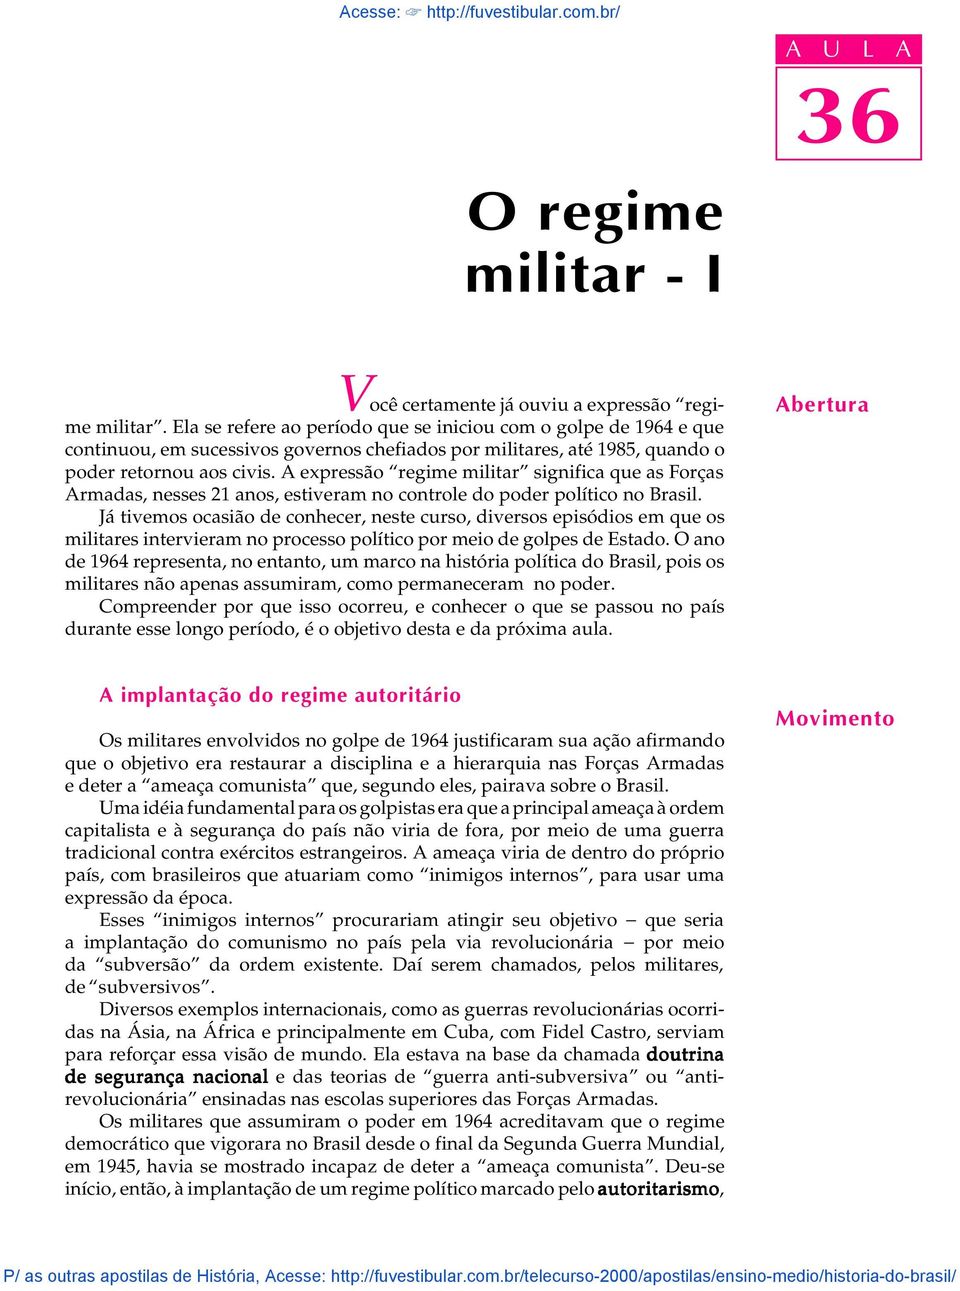 A expressão regime militar significa que as Forças Armadas, nesses 21 anos, estiveram no controle do poder político no Brasil.